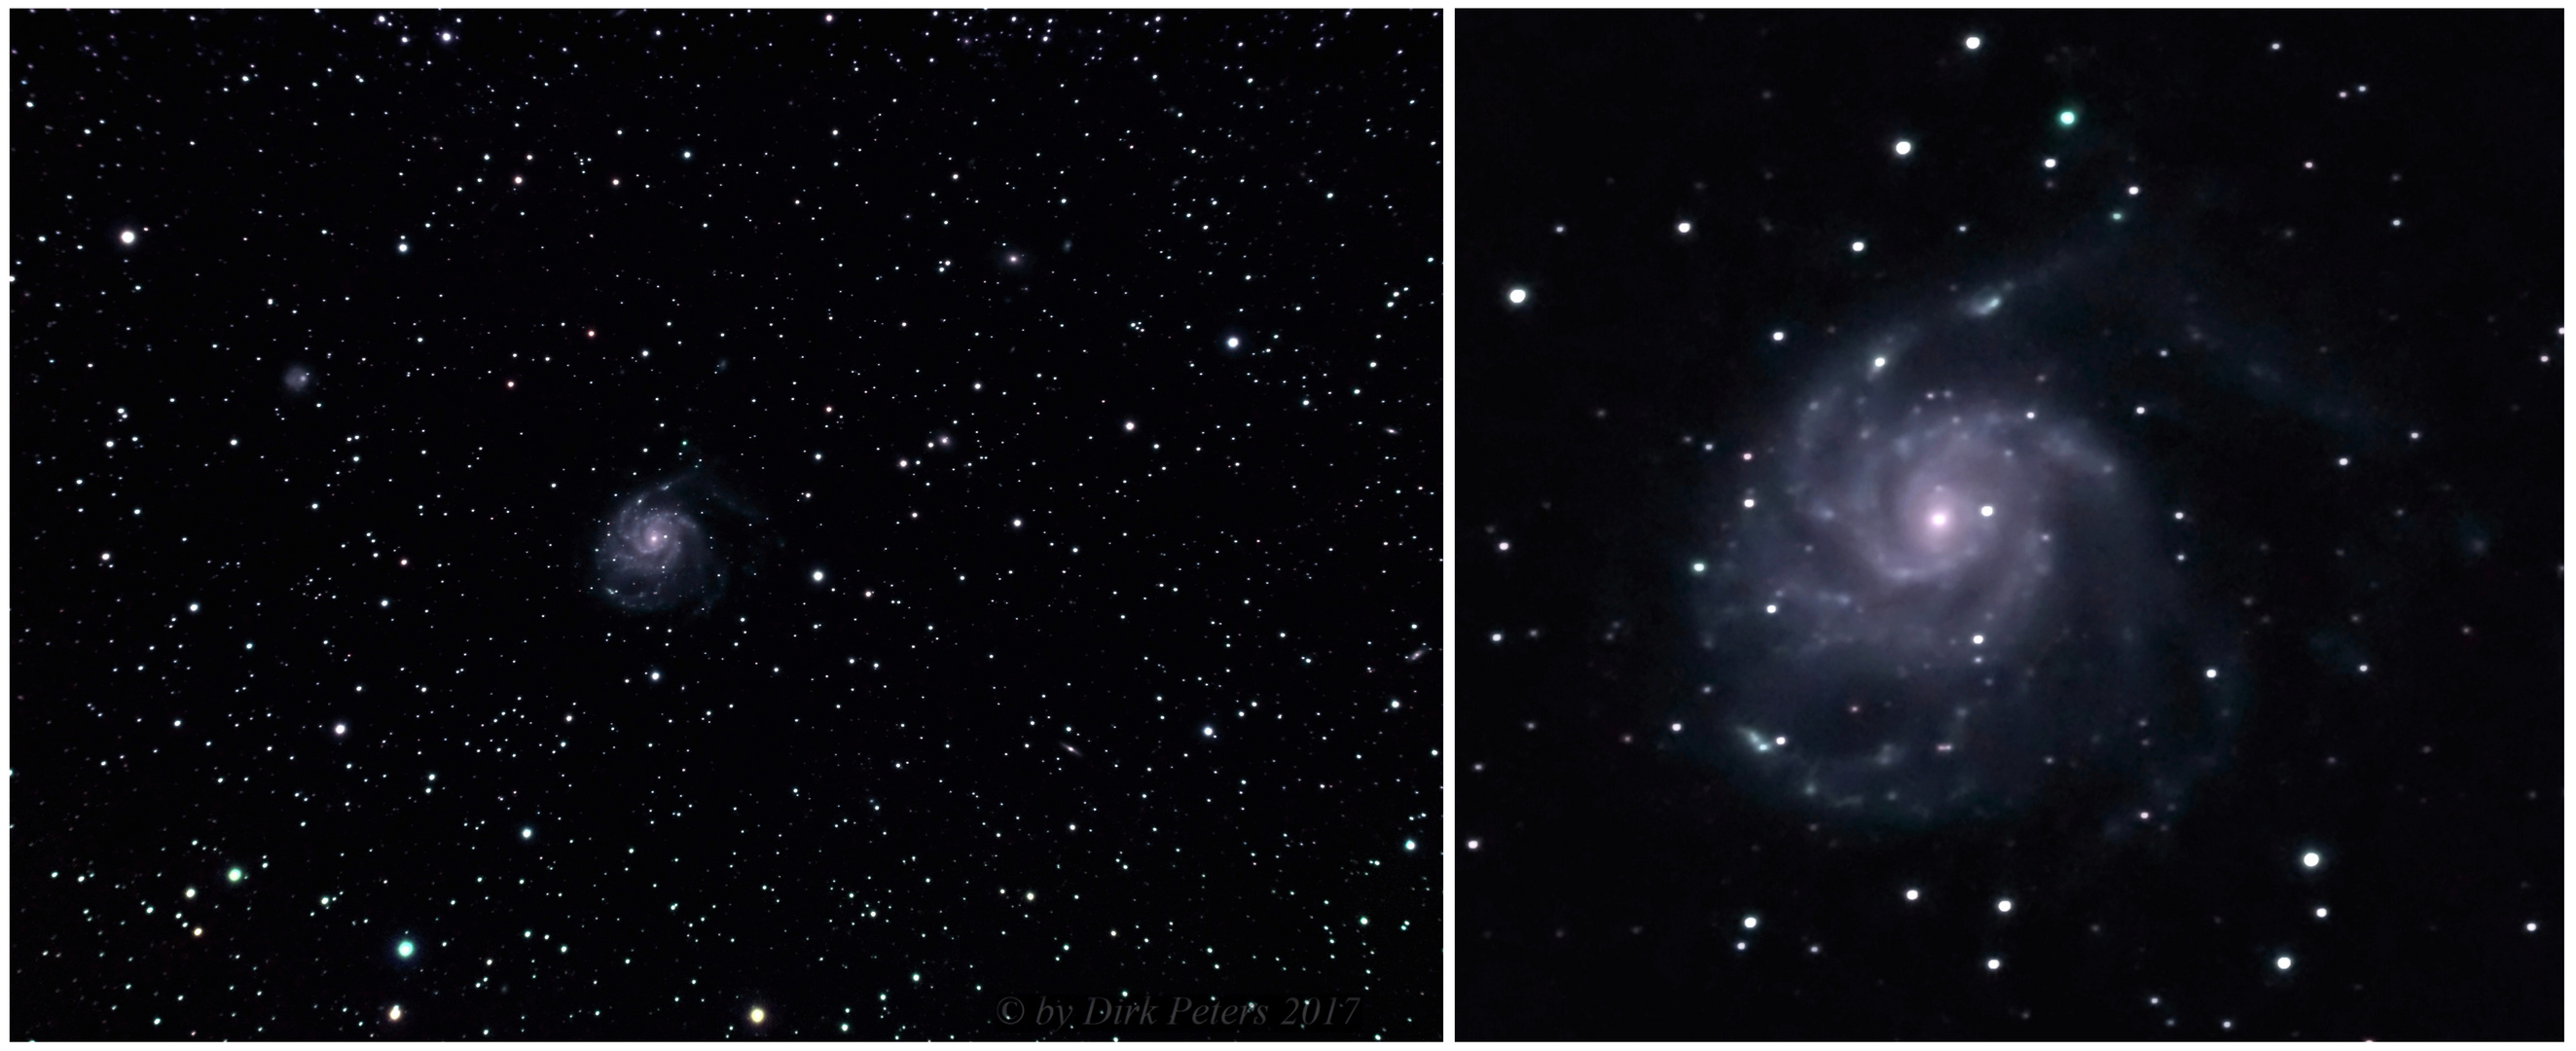 Feuerrad-Galaxie (22 Mio. Lichtjahre entfernt) fotografiert mit "kleiner Optik"